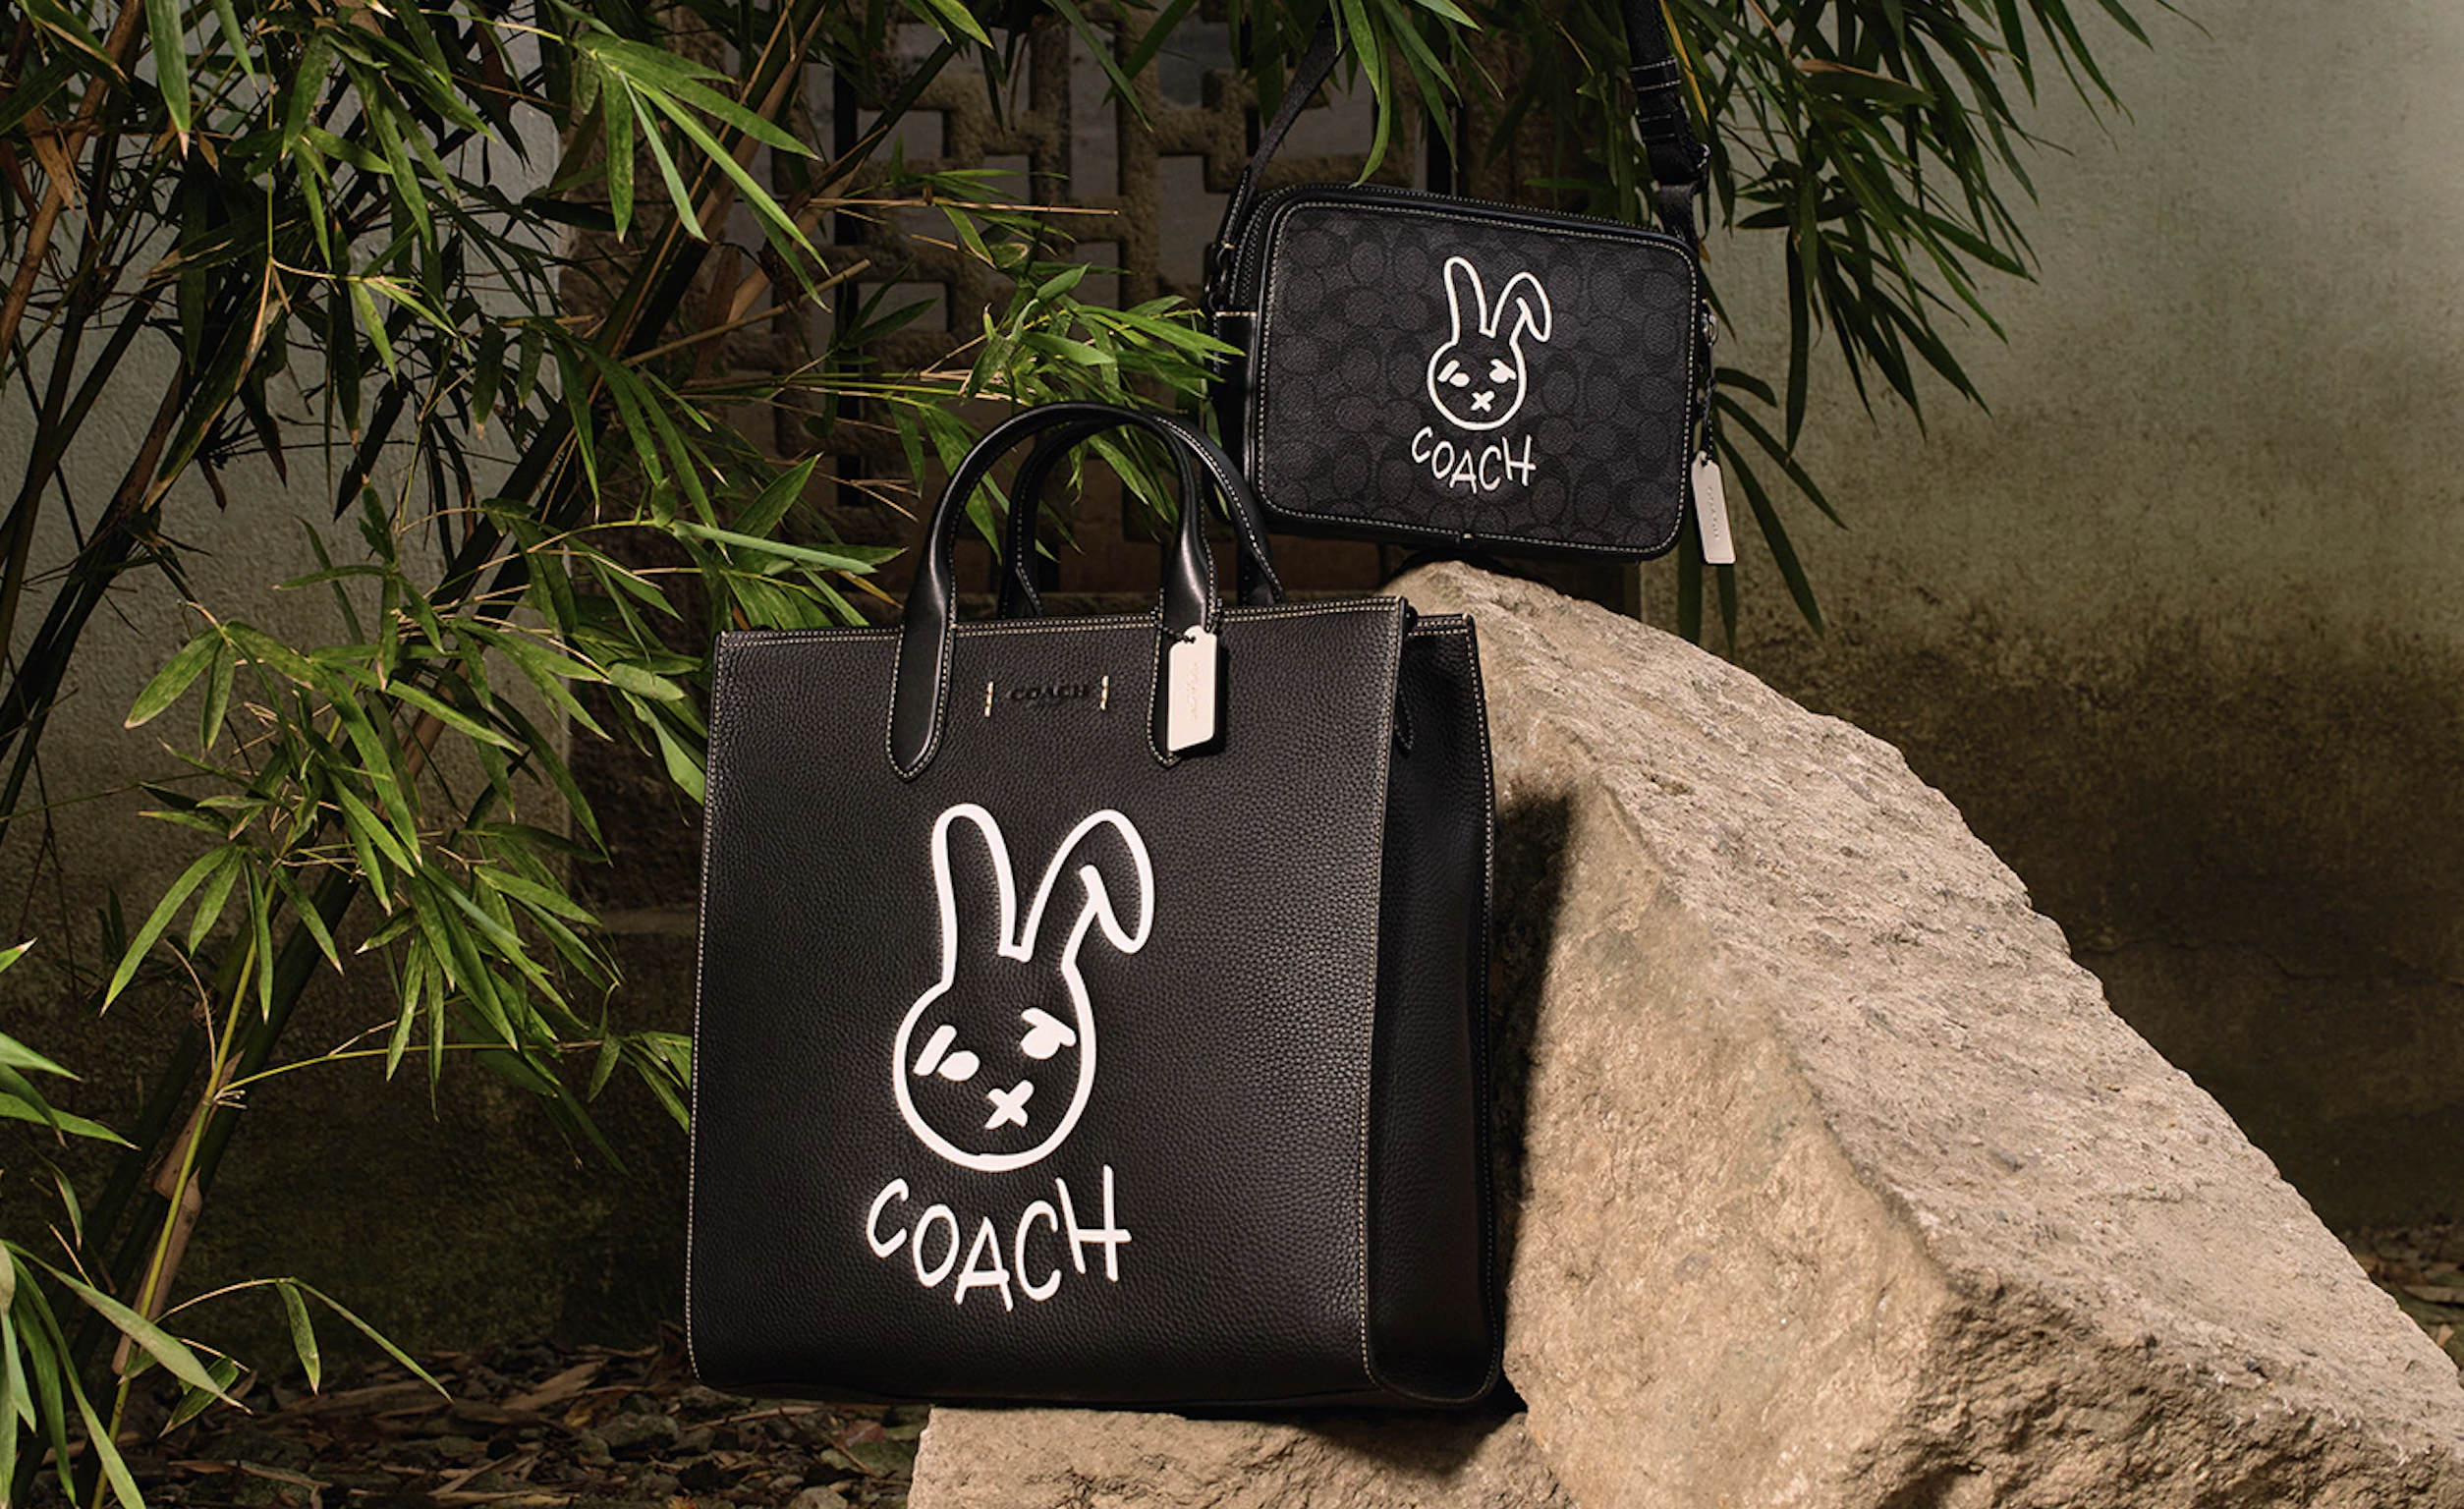 Coach presenta su colección Lunar Rabbit Year